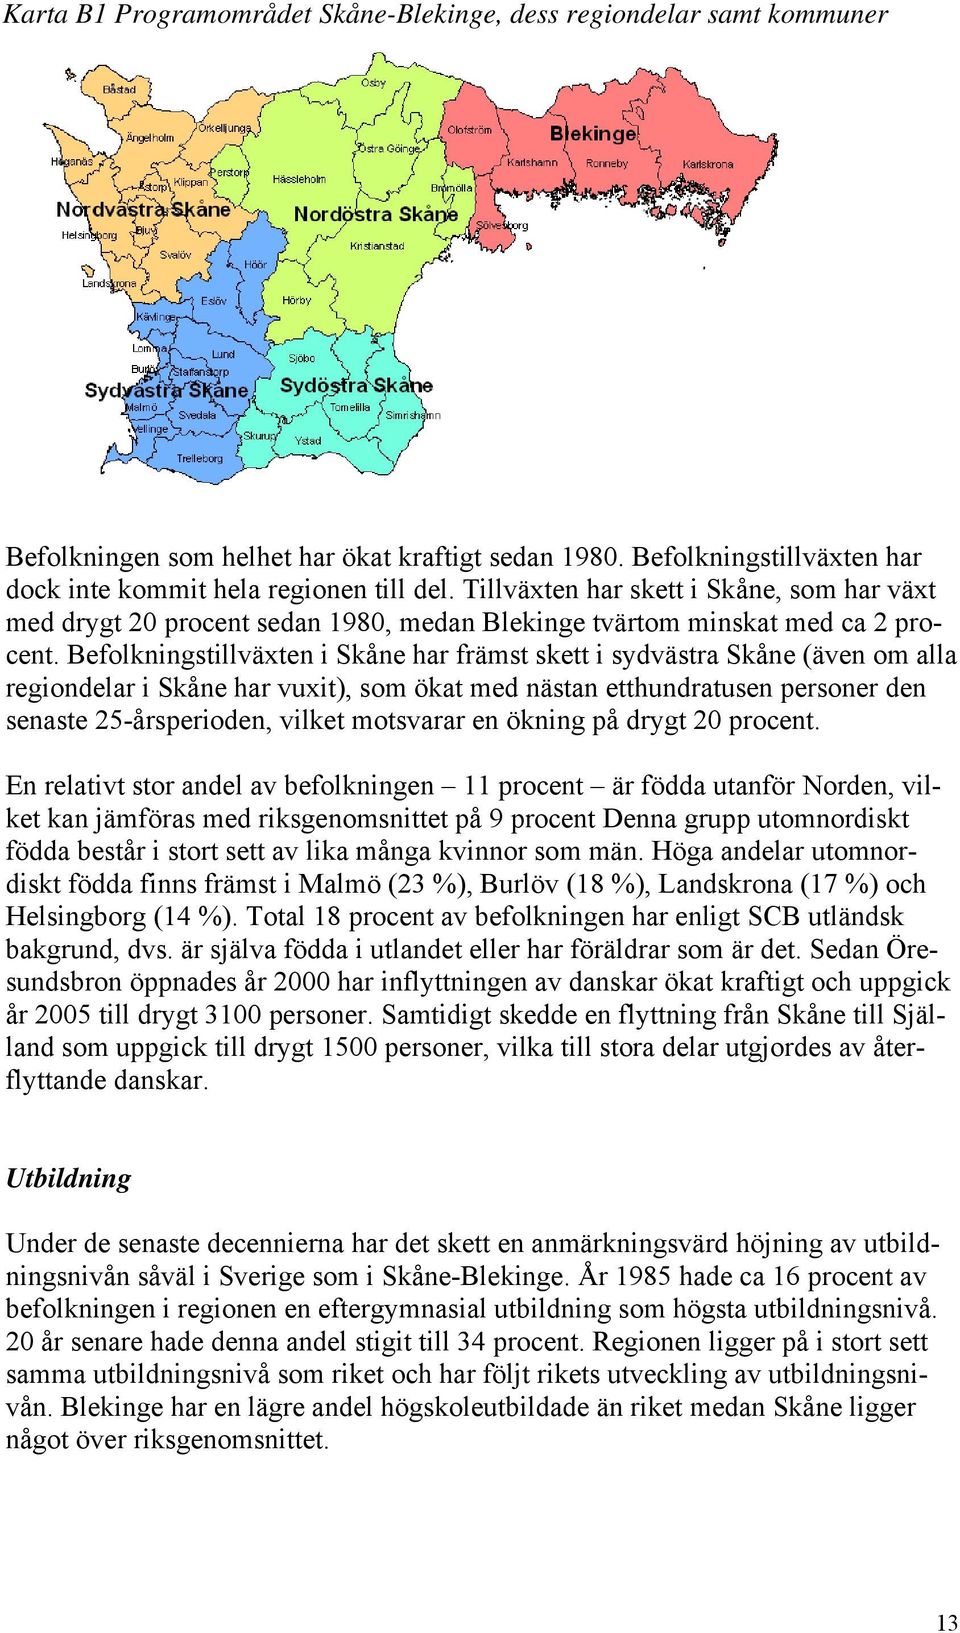 Befolkningstillväxten i Skåne har främst skett i sydvästra Skåne (även om alla regiondelar i Skåne har vuxit), som ökat med nästan etthundratusen personer den senaste 25-årsperioden, vilket motsvarar